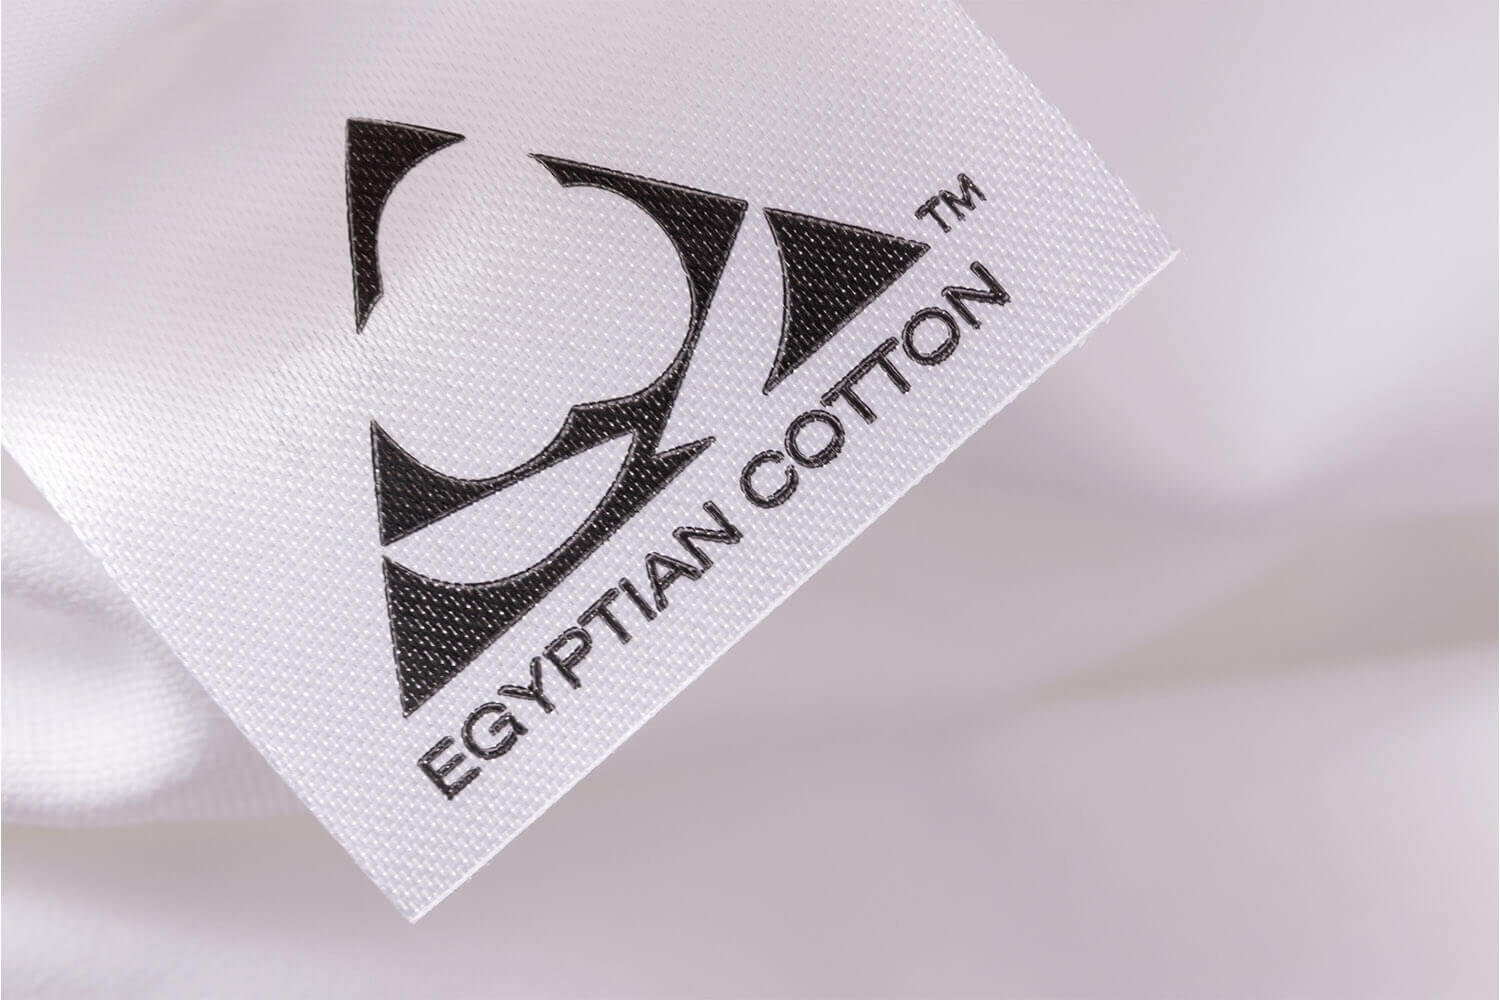 Étiquette de marque EGYPTIAN COTTON sur les draps en coton égyptien Logan & Cove